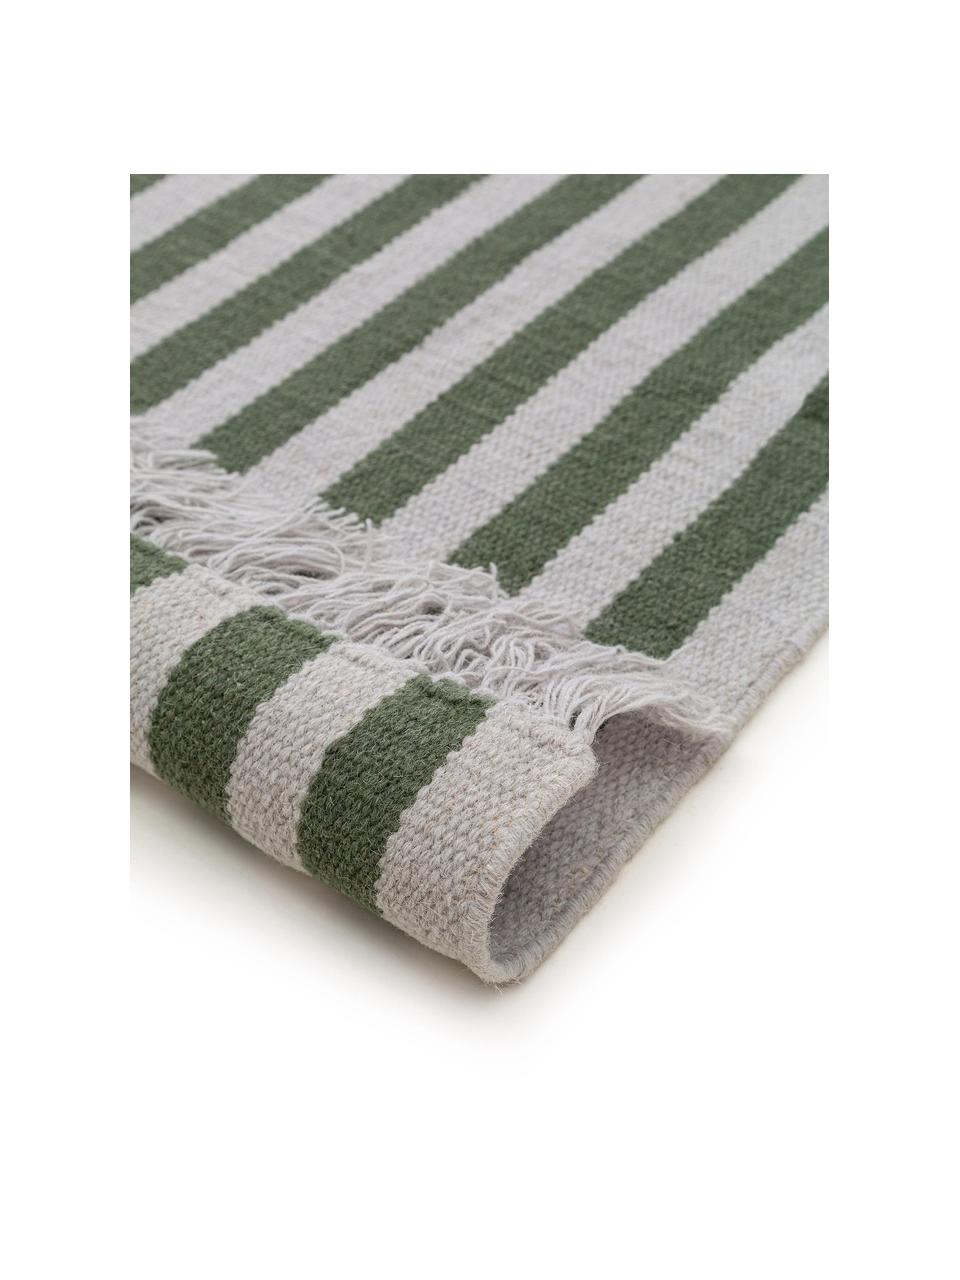 Ručně tkaný vlněný koberec s třásněmi Gitta, 90 % vlna, 10 % bavlna

V prvních týdnech používání vlněných koberců se může objevit charakteristický jev uvolňování vláken, který po několika týdnech používání zmizí., Světle šedá, tmavě zelená, Š 80 cm, D 150 cm (velikost XS)